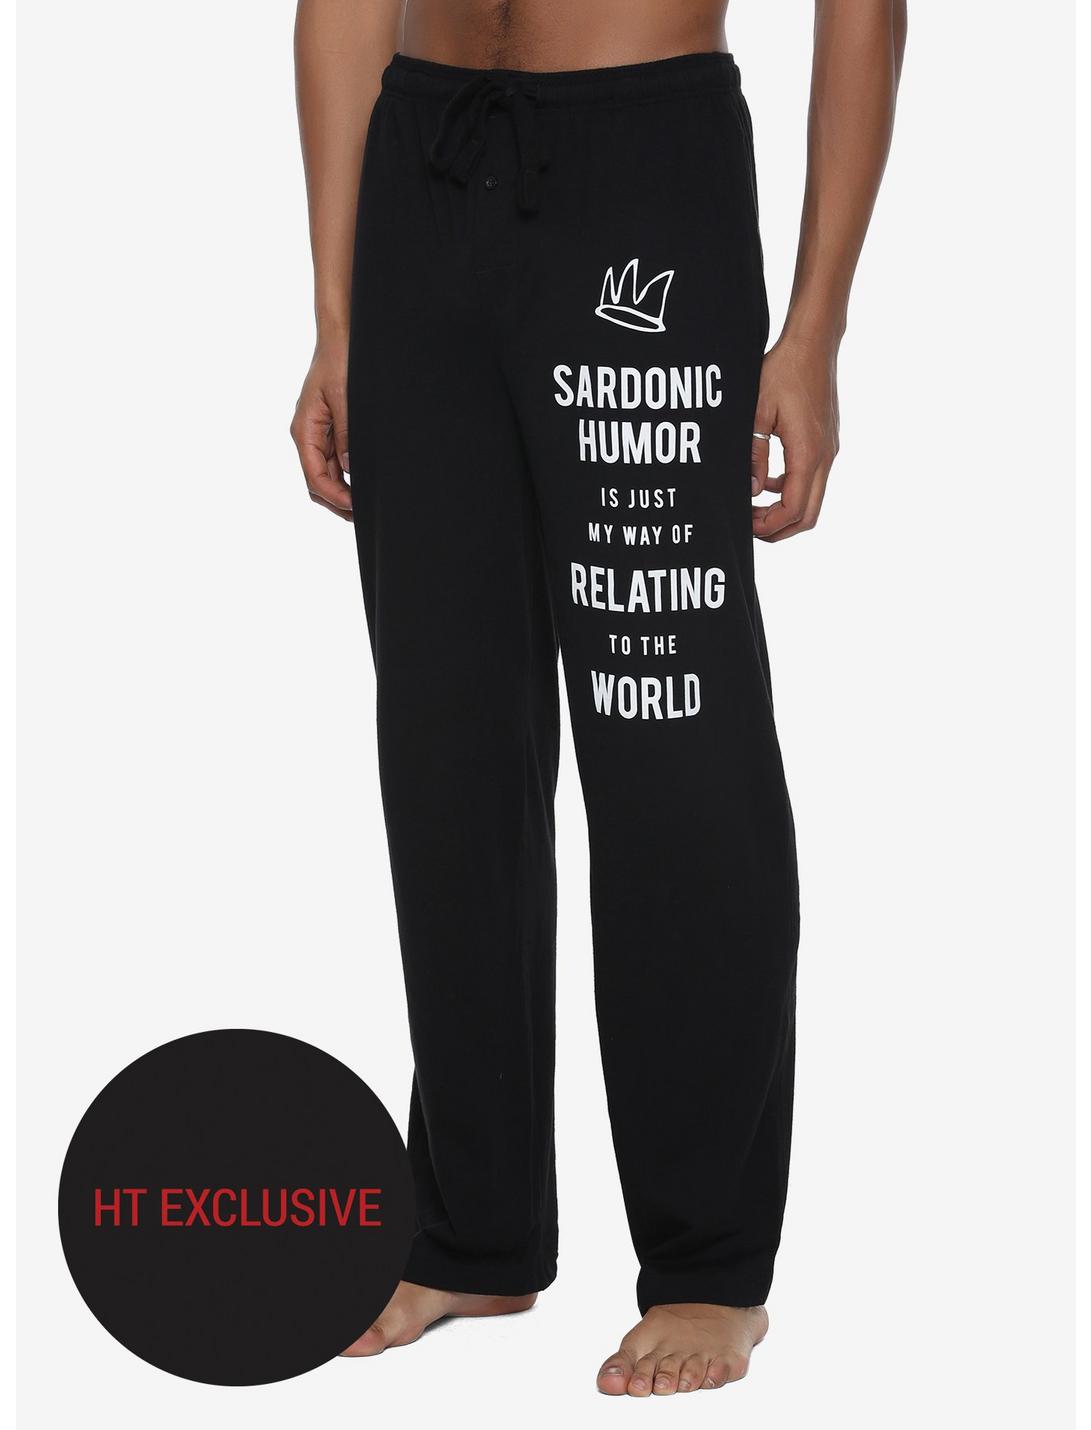 Riverdale Jughead Sardonic Humor Guys Pajama Pants Hot Topic Exclusive, BLACK, hi-res